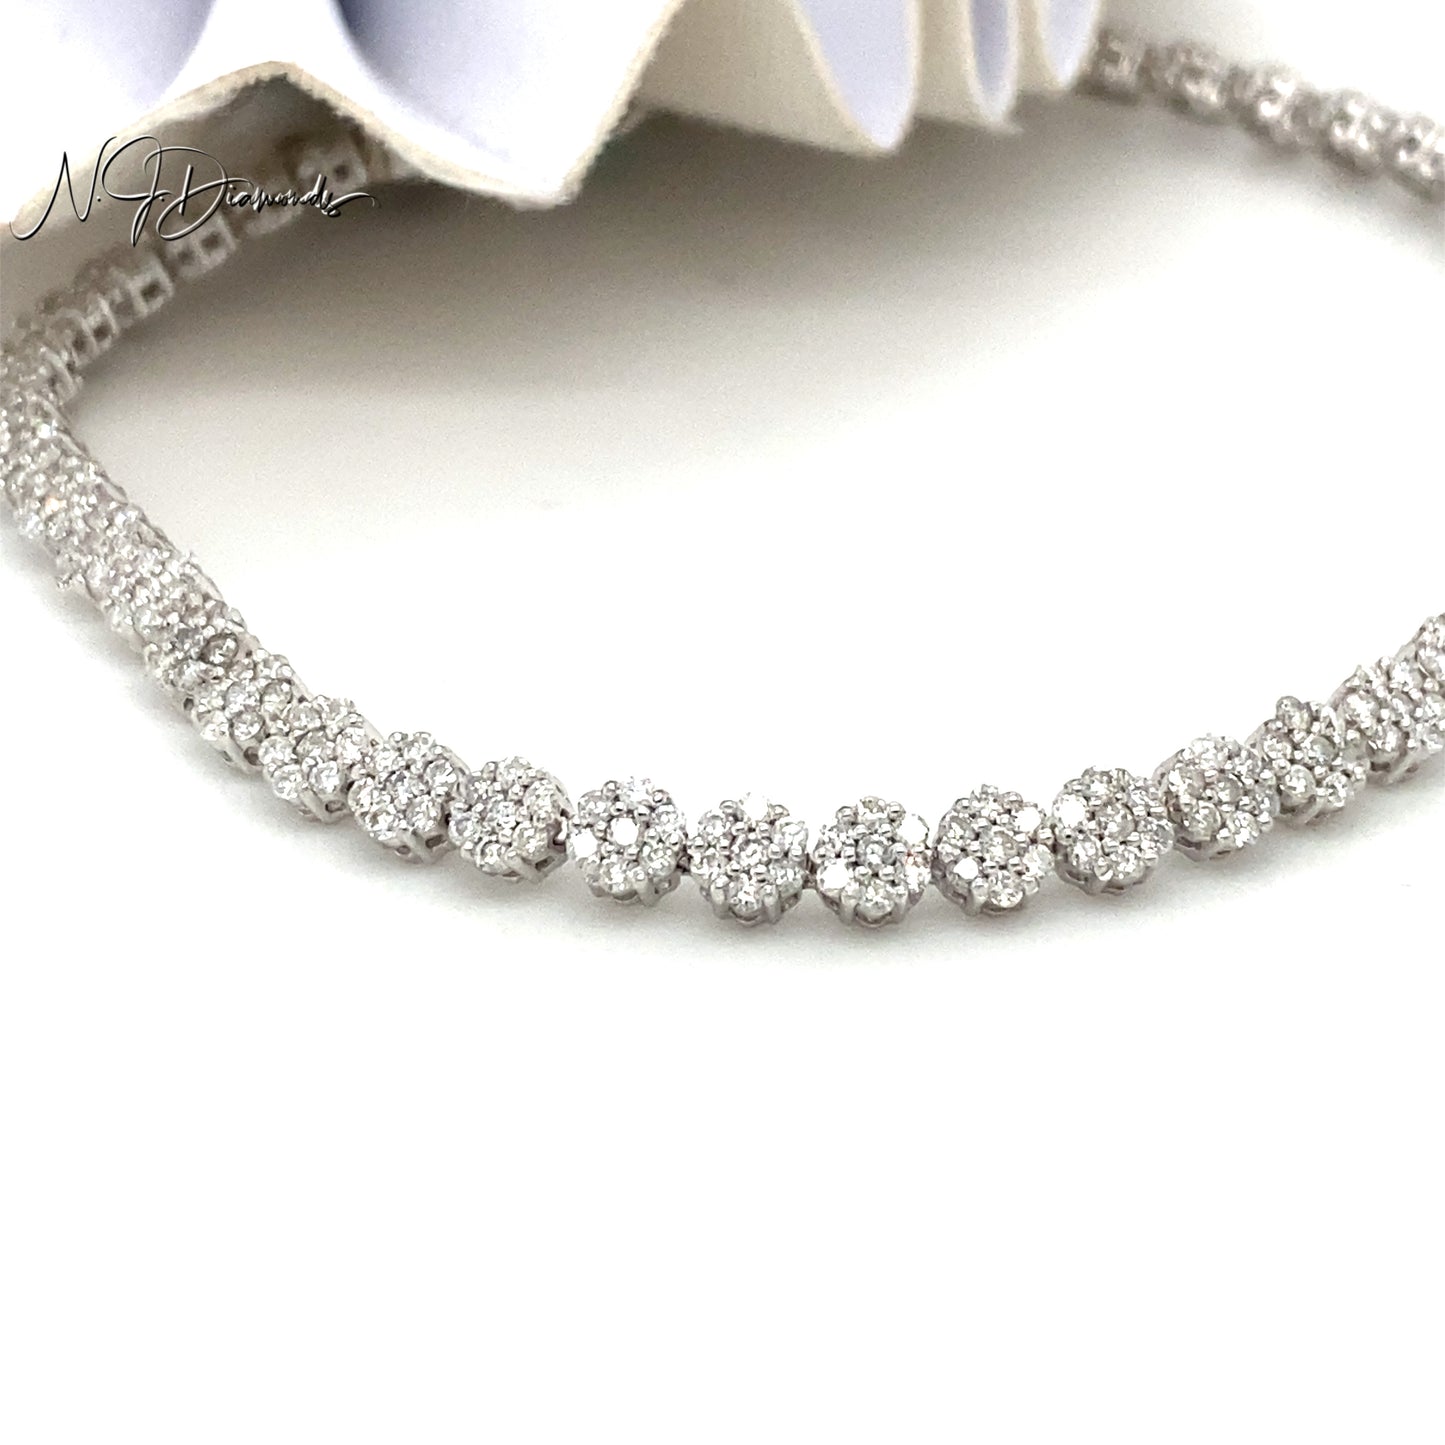 Ladies White Gold Diamond Tennis Bracelet